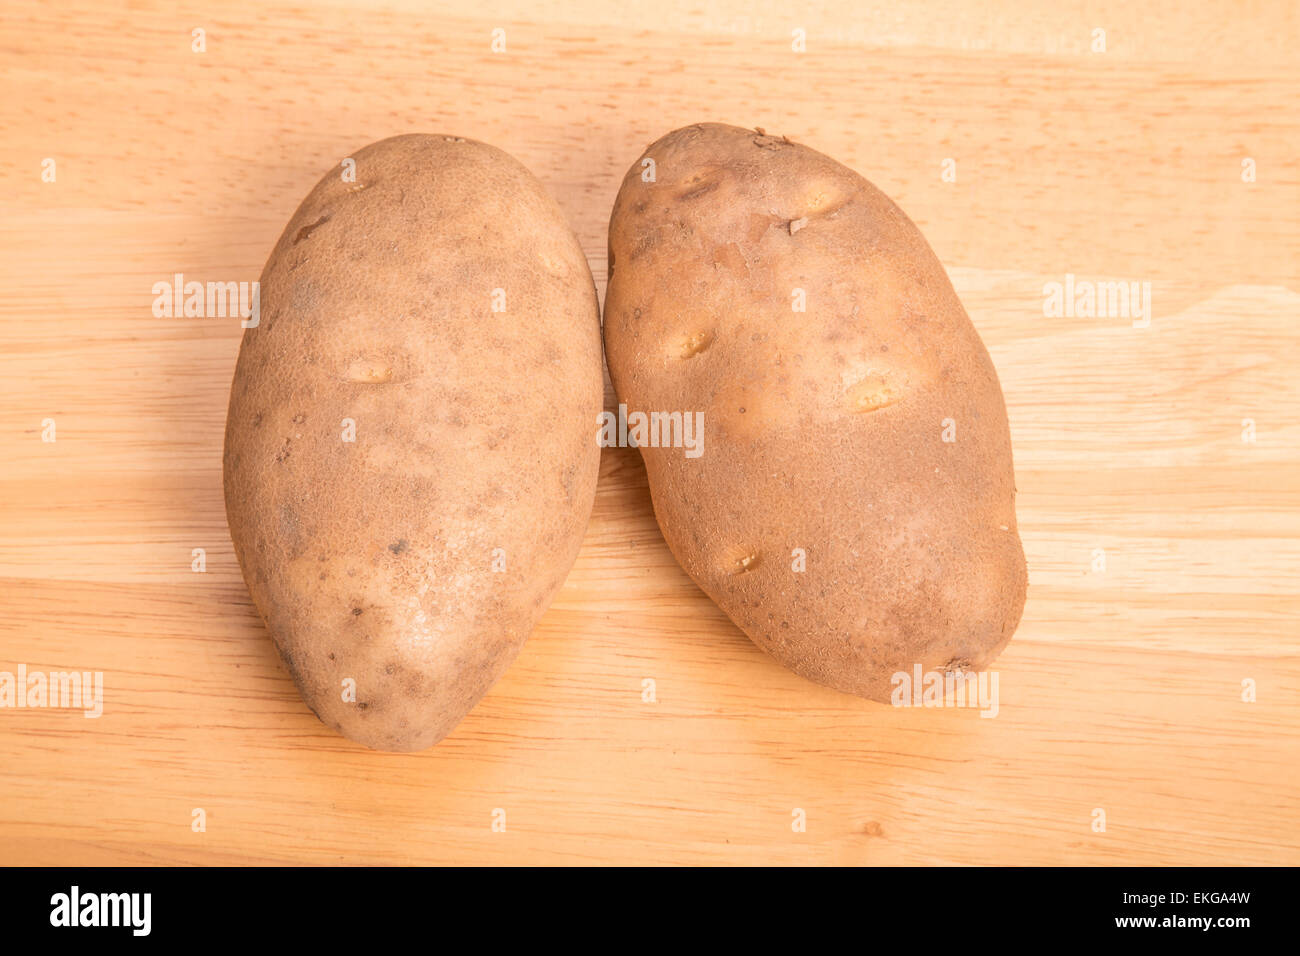 Deux matières Mississippi pommes de terre sur une planche à découper en bois Banque D'Images